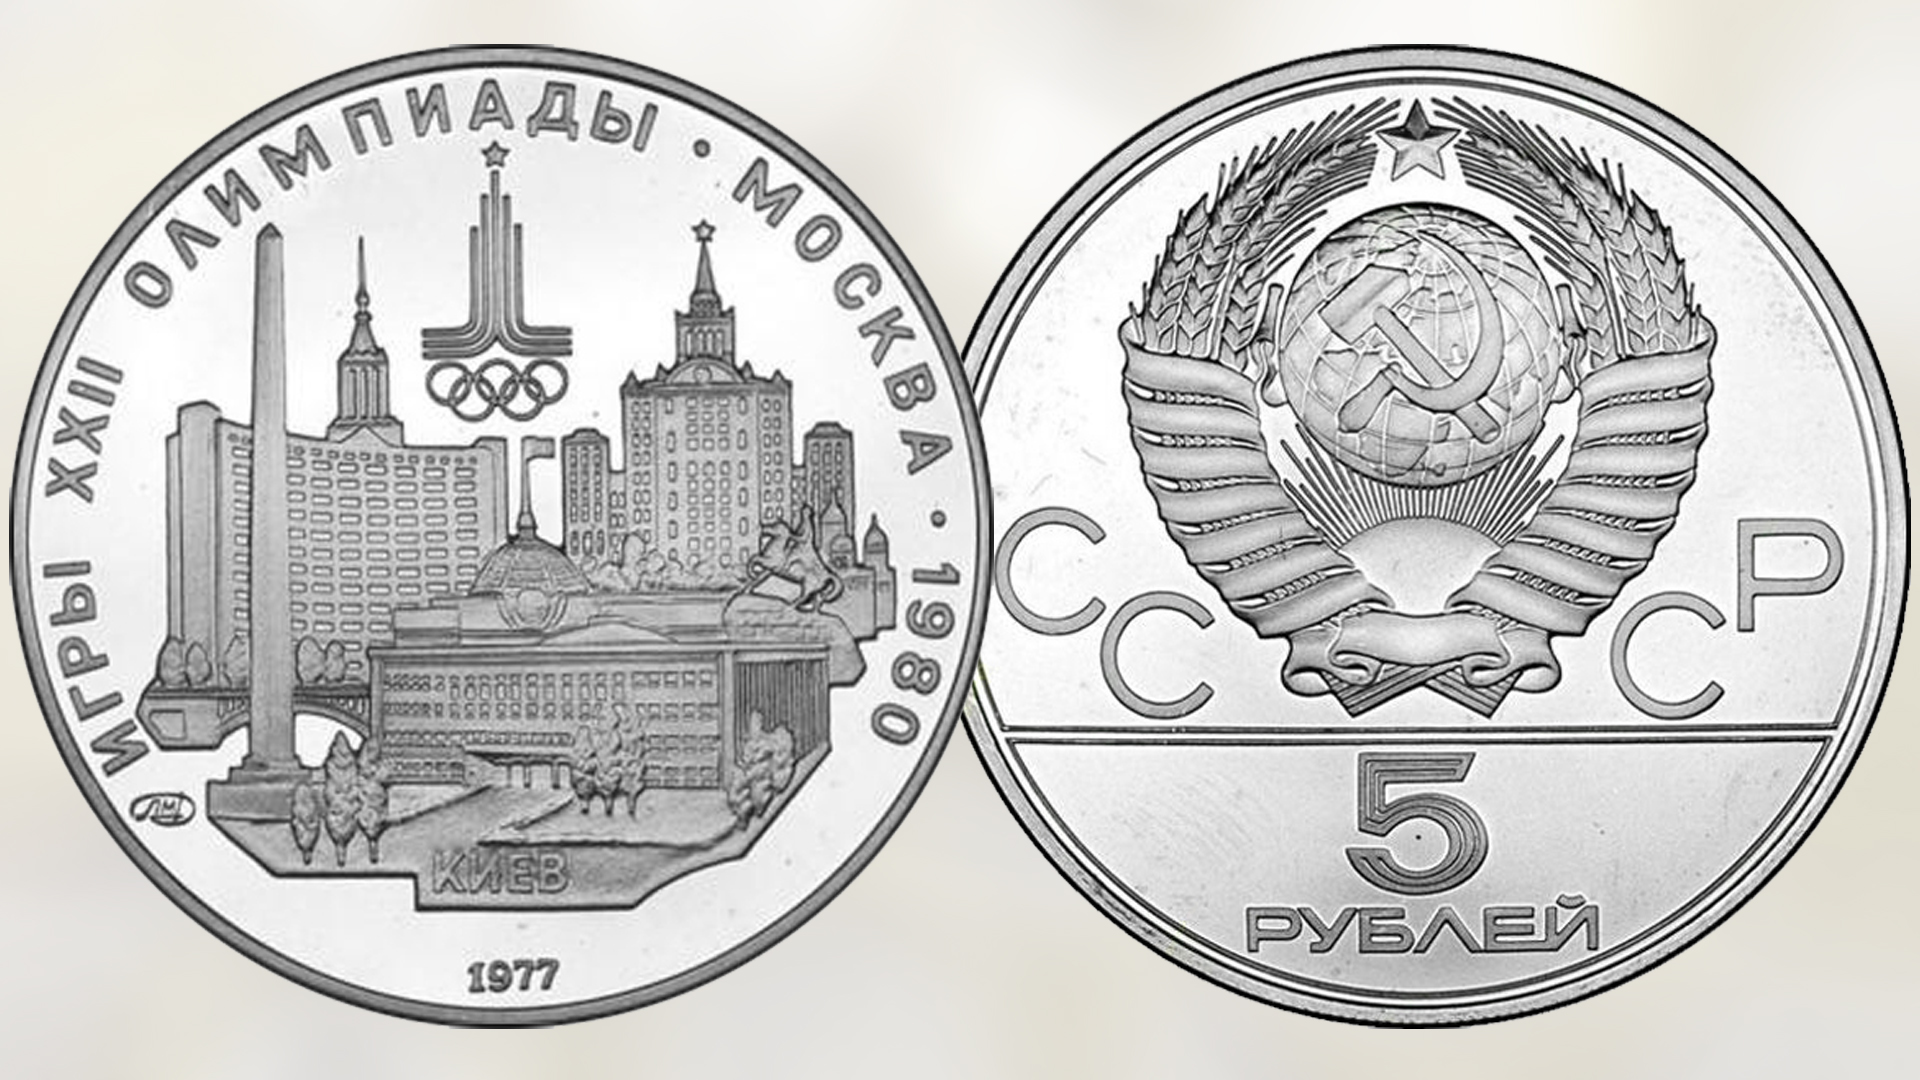 5 рублей серебряные. Ленинград монета 1977. 5 Рублей 1977 Ленинград.